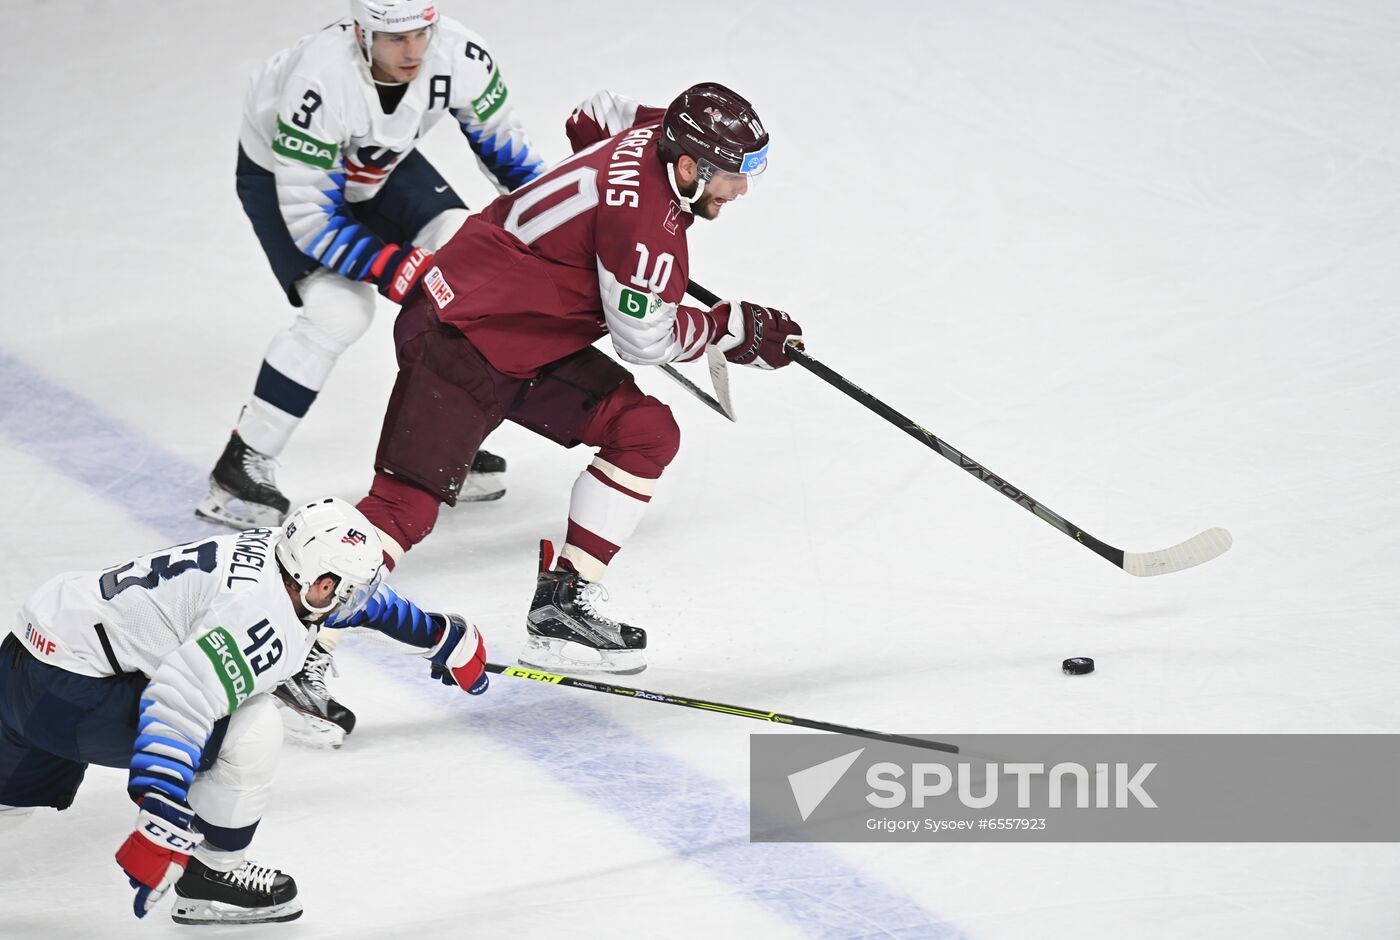 Latvia Ice Hockey Worlds United States - Latvia